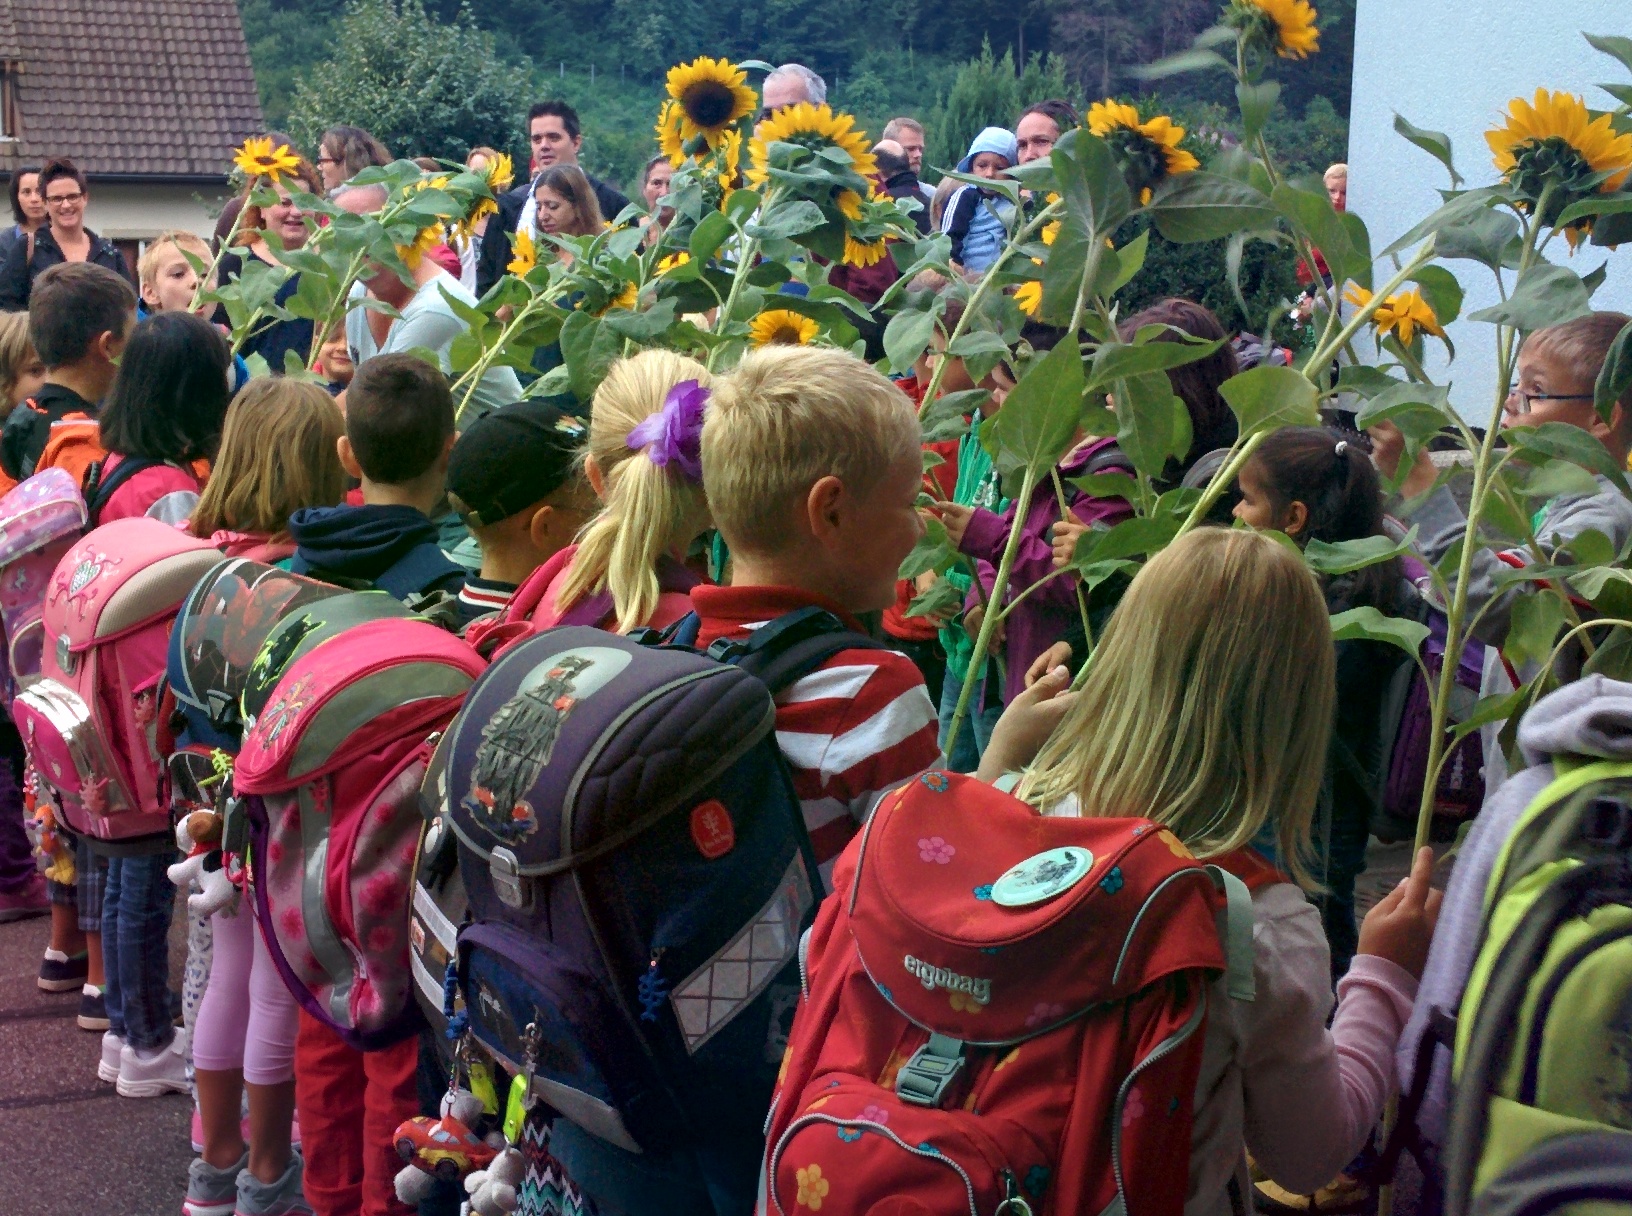 Freundlicher Empfang: Die Zweitklässler begrüssen die Bildungsdirektorin mit Sonnenblumen und singen den Erstklässlern ein Ständchen.